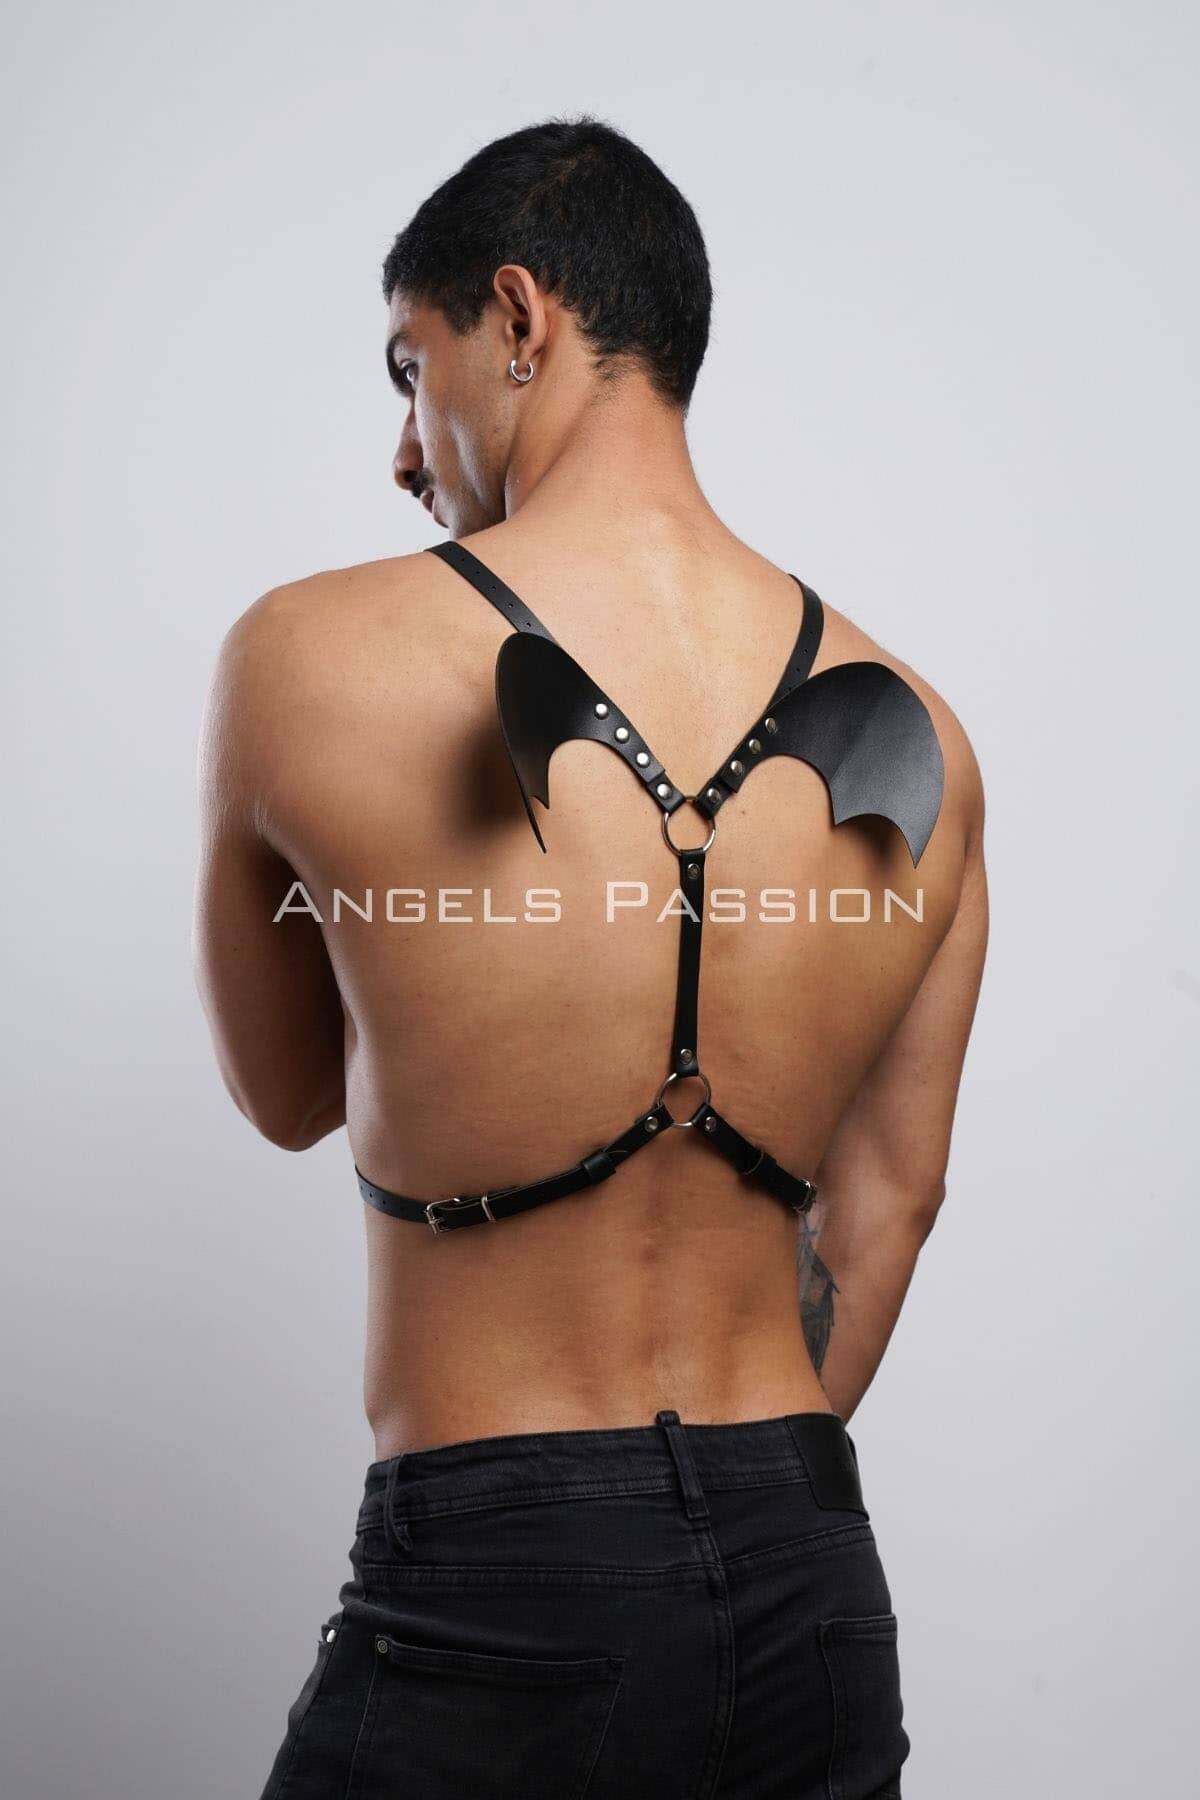 CLZ41 Kanatlı Erkek Harness, Erkek Göğüs Harness ve Kanat Detay, Deri Kanatlı Harness - Ürün Rengi:Siyah